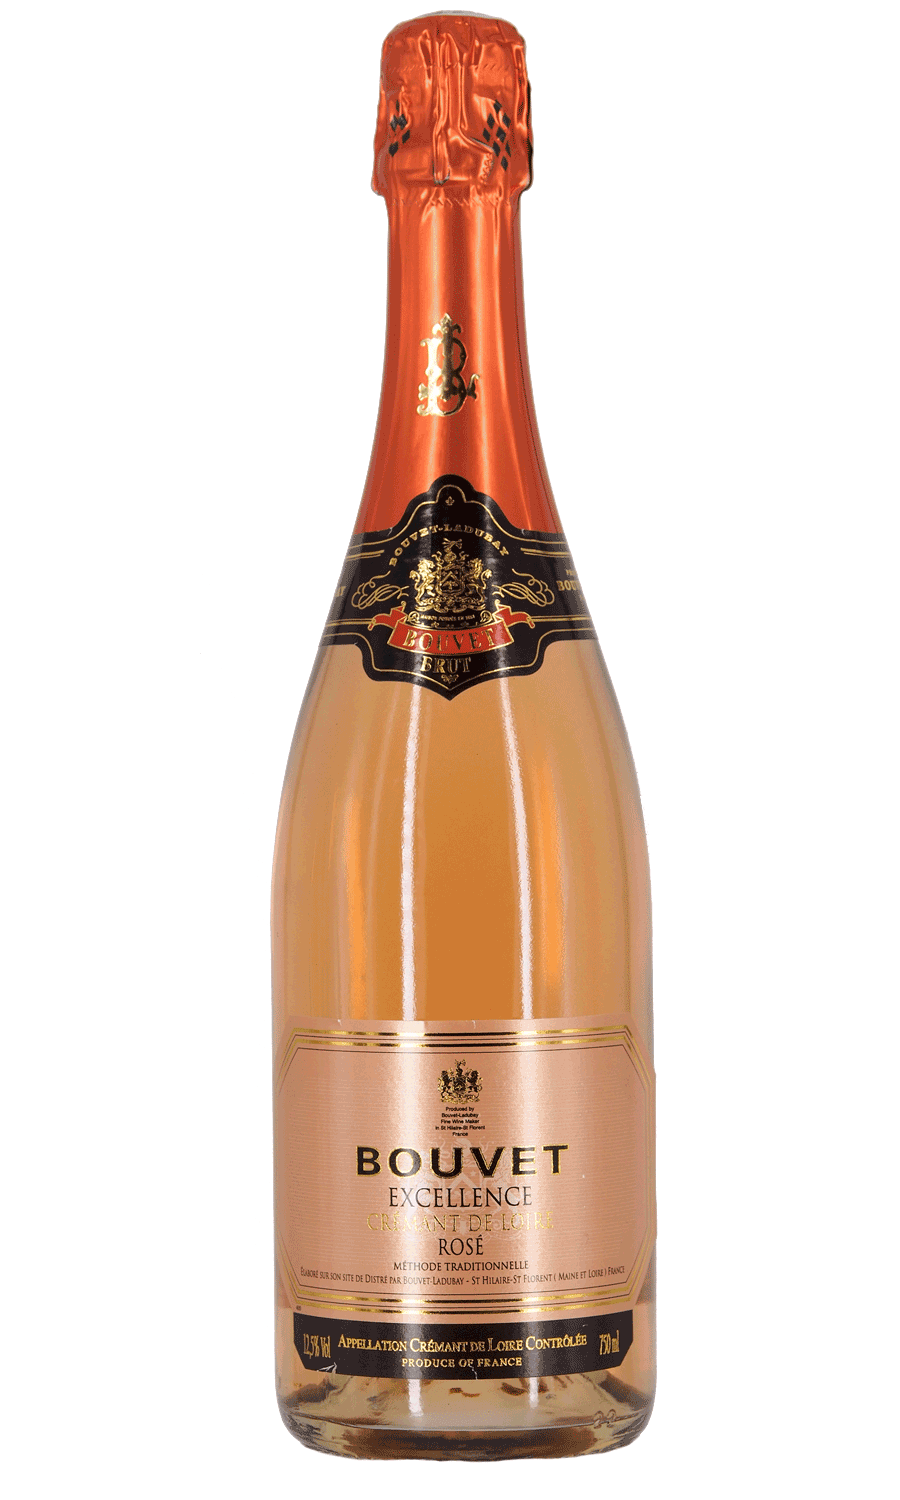 Bouvet Cremant "Excellence" Rosé brut